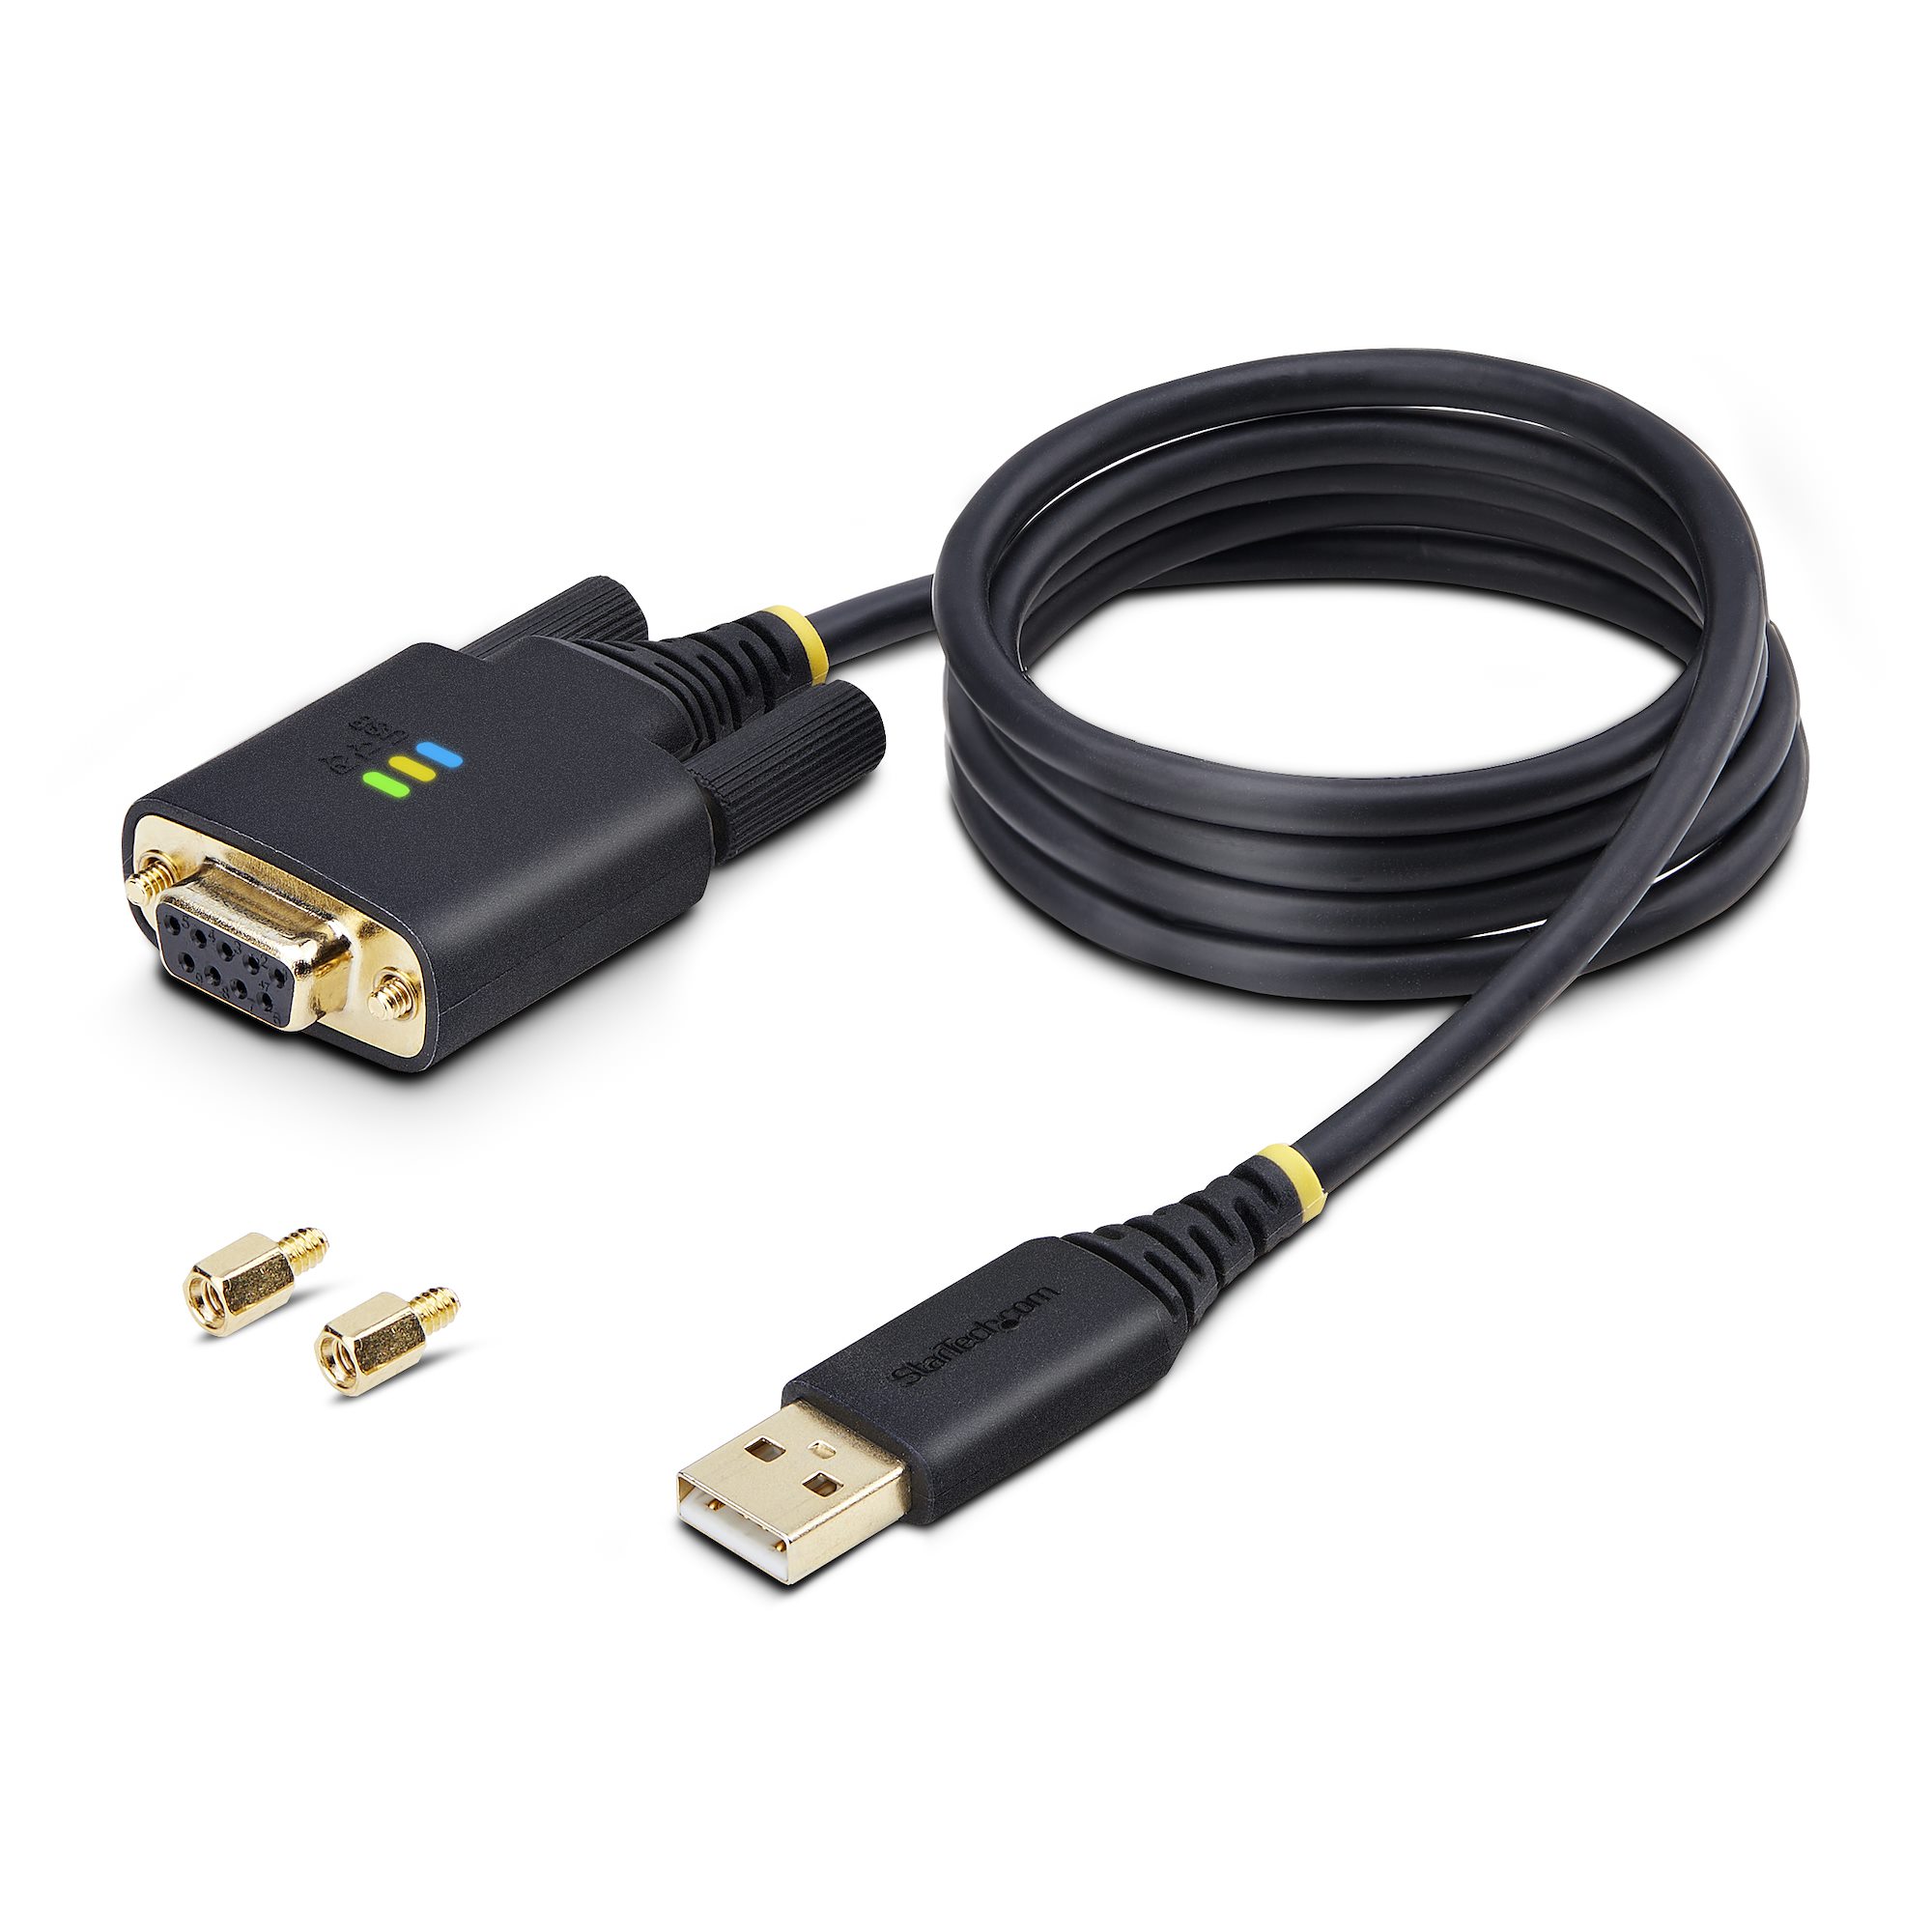 Cable alargador USB RS PRO 1 puerto puertos USB